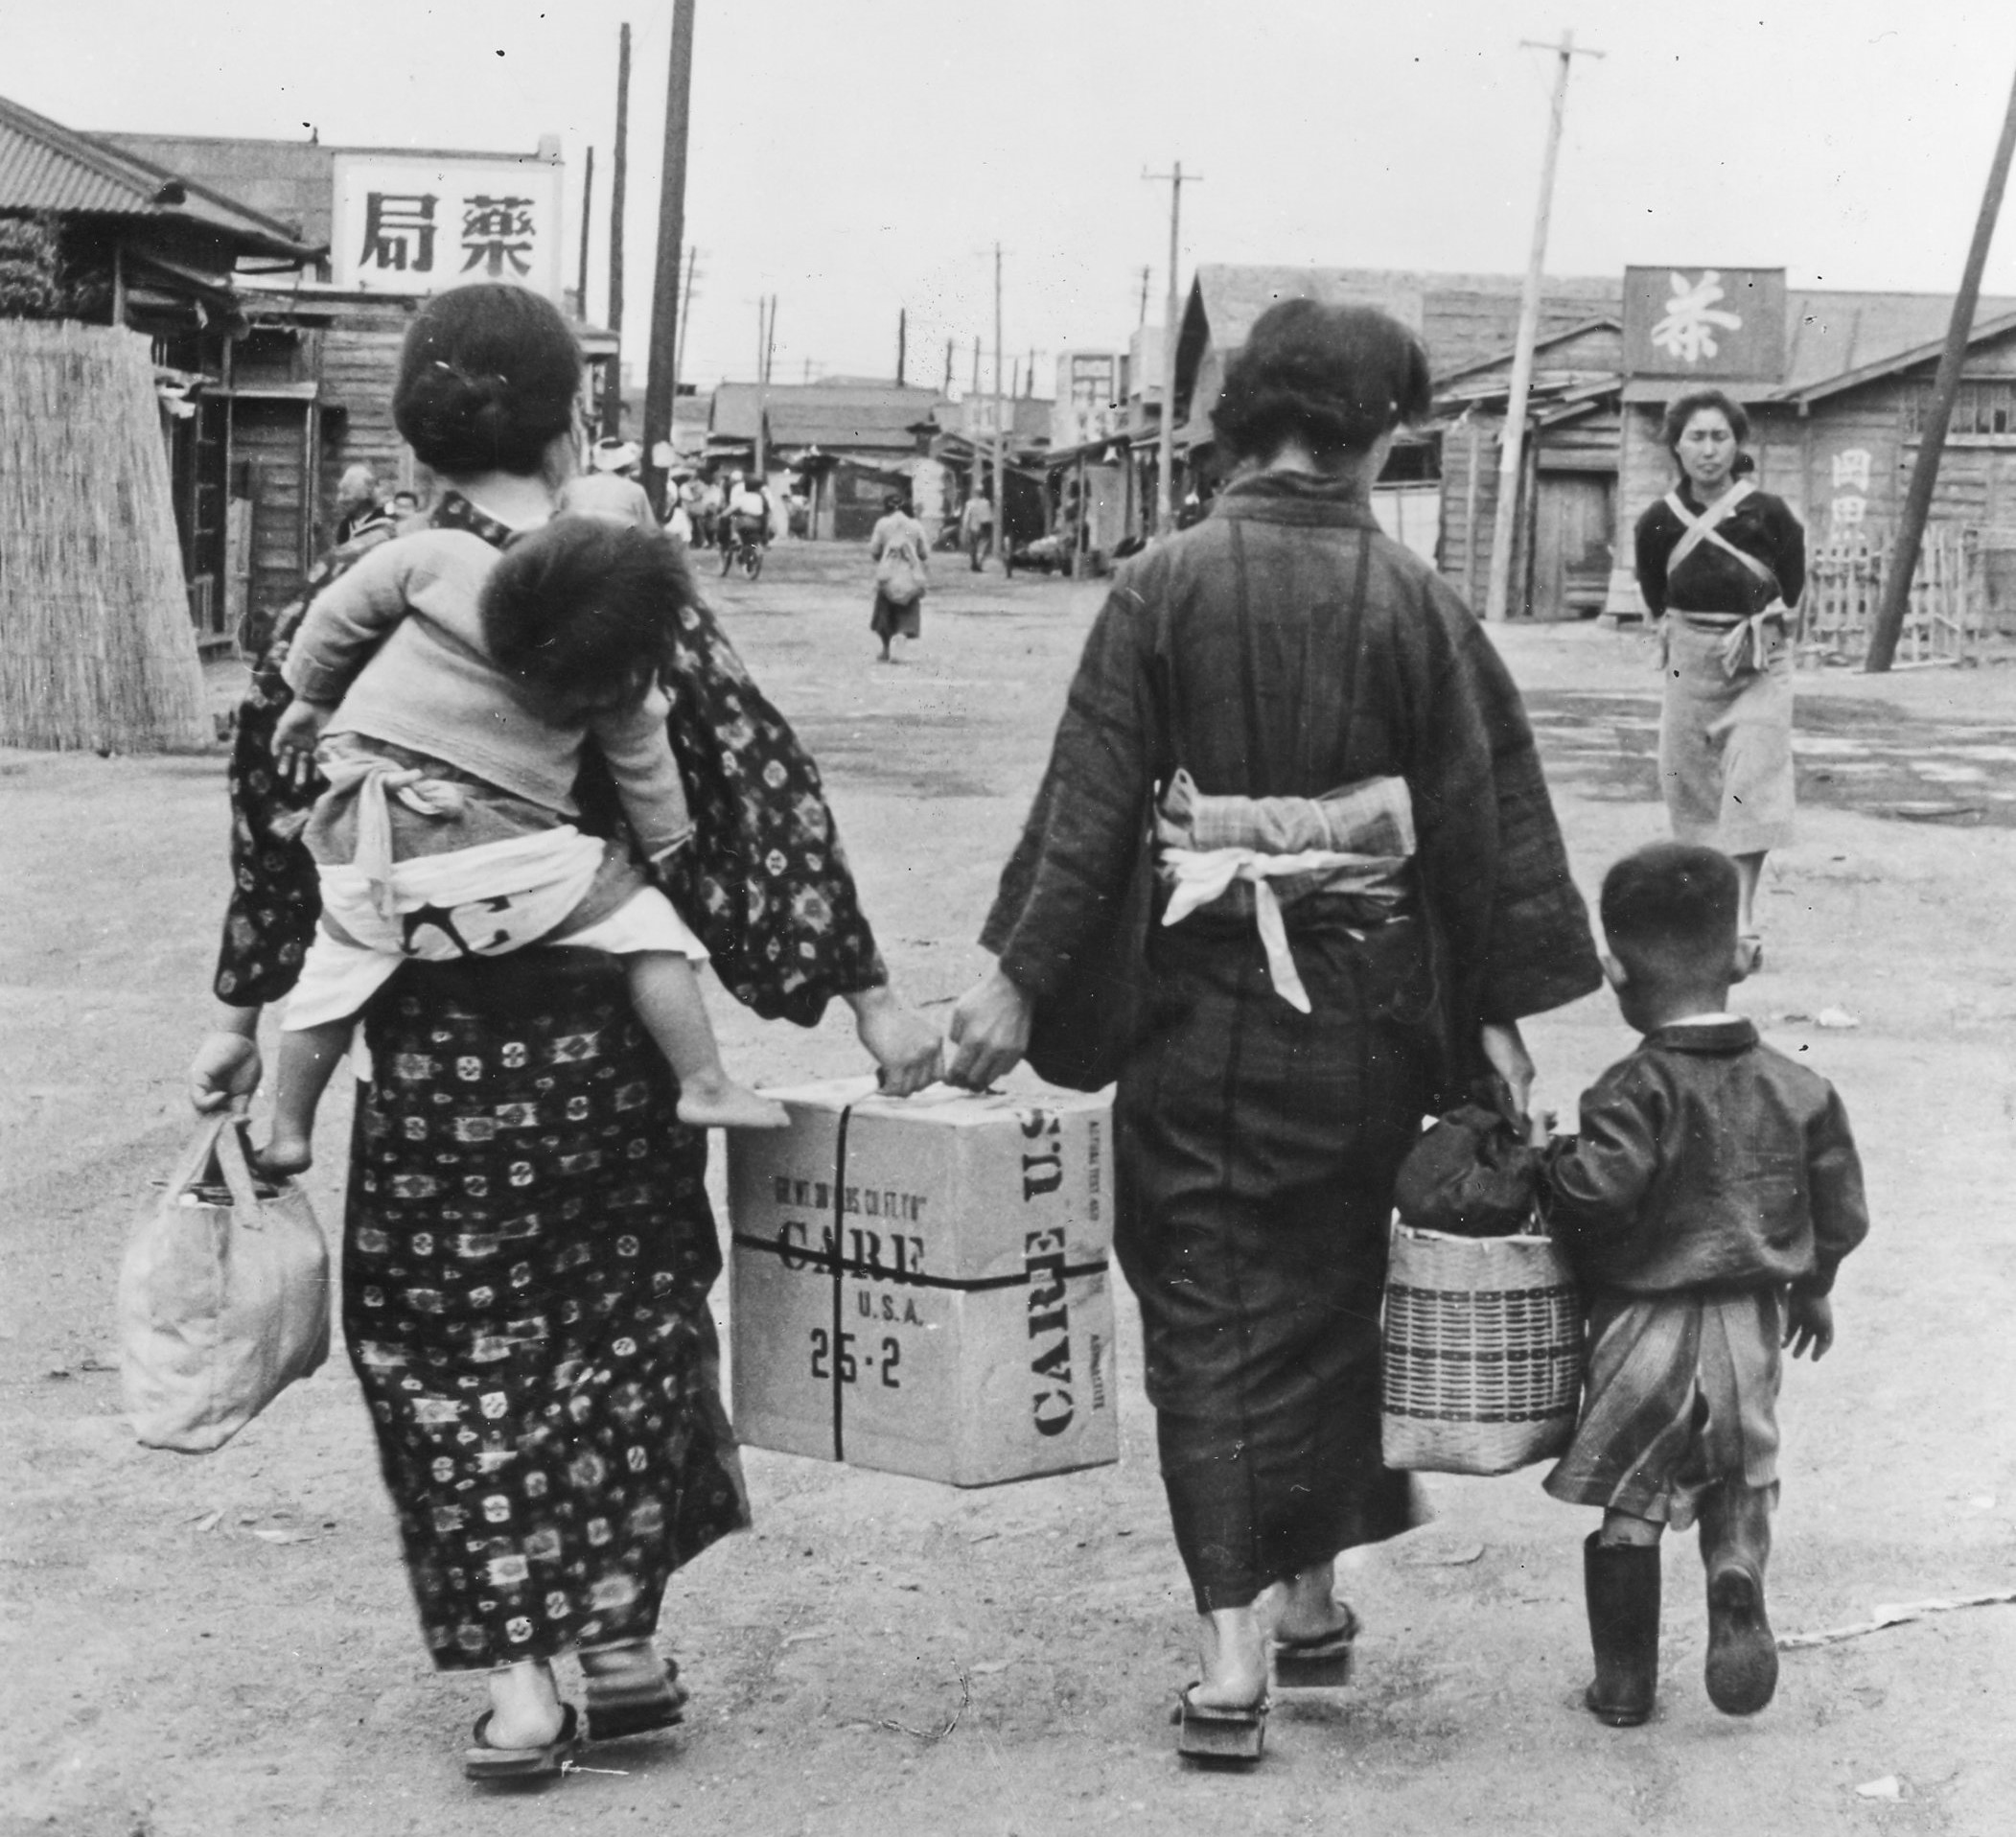 終戦の日に寄せて：戦後の衣料・食糧等の物資が絶対的に不足した日本を救った「CAREパッケージ（ケア物資）」と日系人